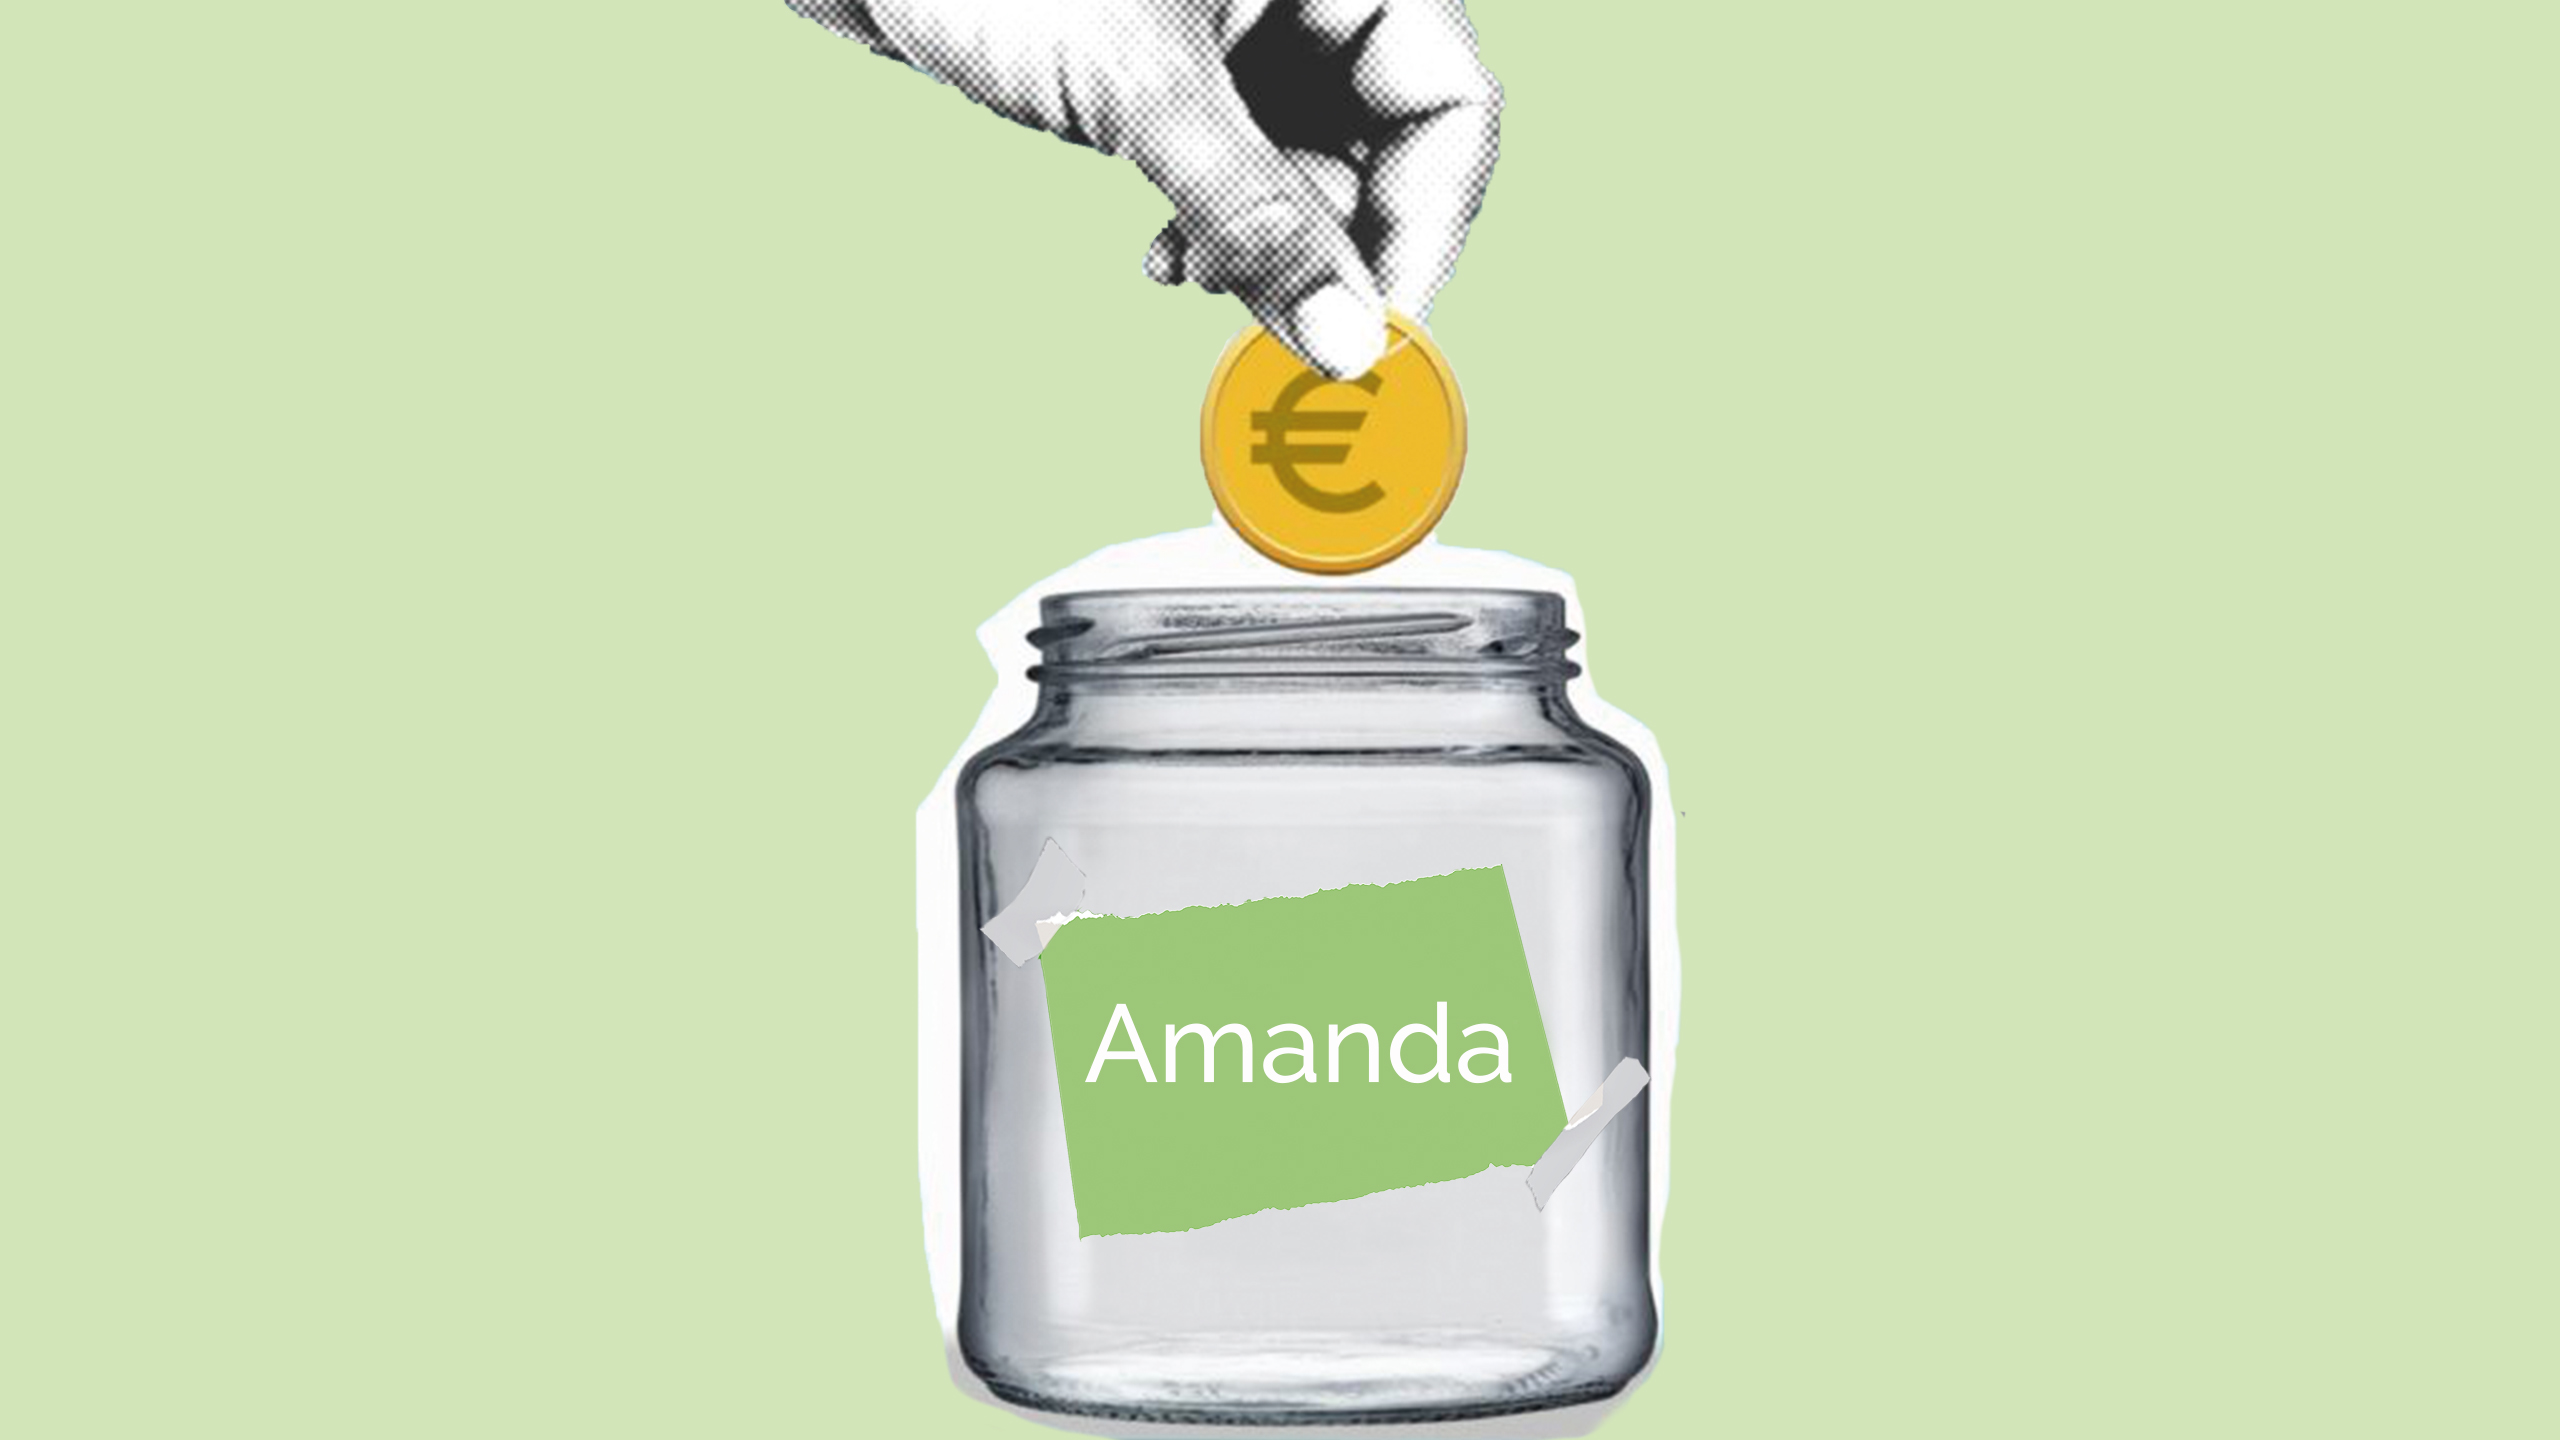 de spaarrekening van Amanda